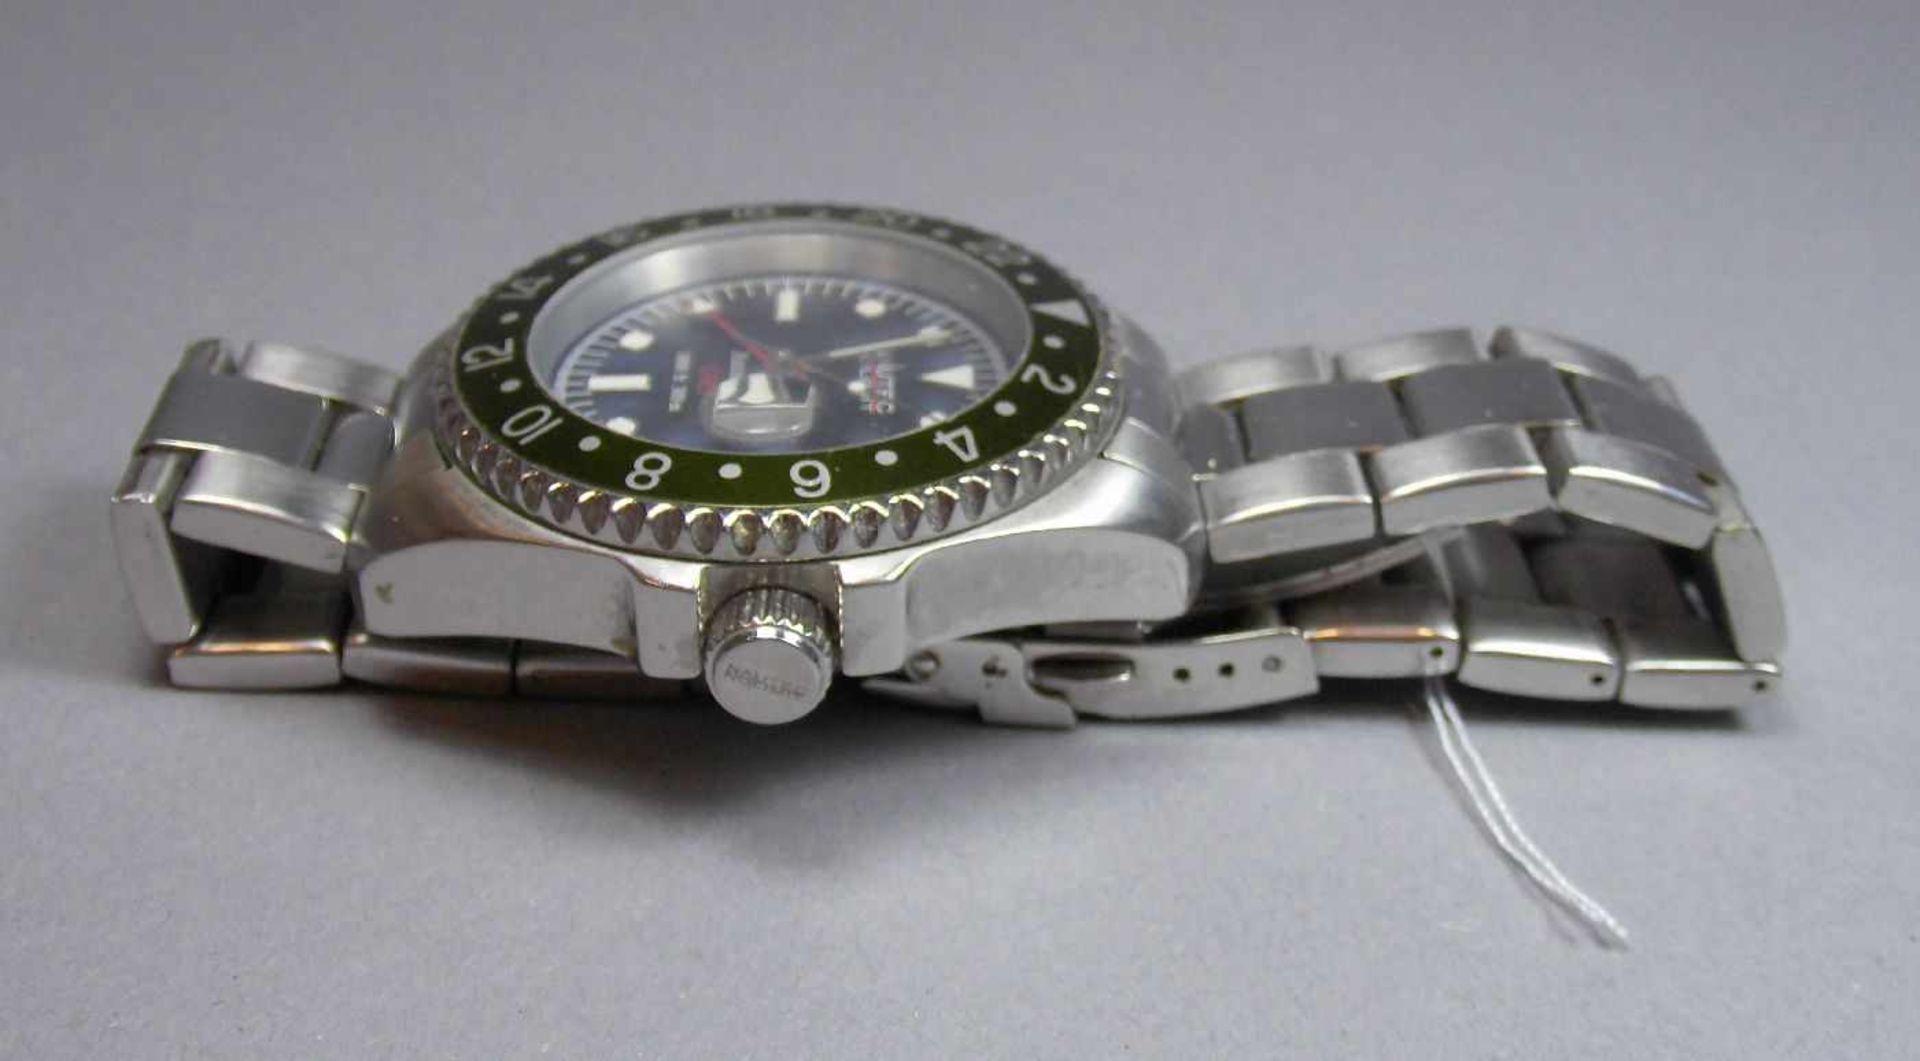 ARMBANDUHR : NAUTEK NO LIMIT GMT / wristwatch, Automatik-Uhr. Rundes Stahlgehäuse mit Gliederarmband - Bild 5 aus 7